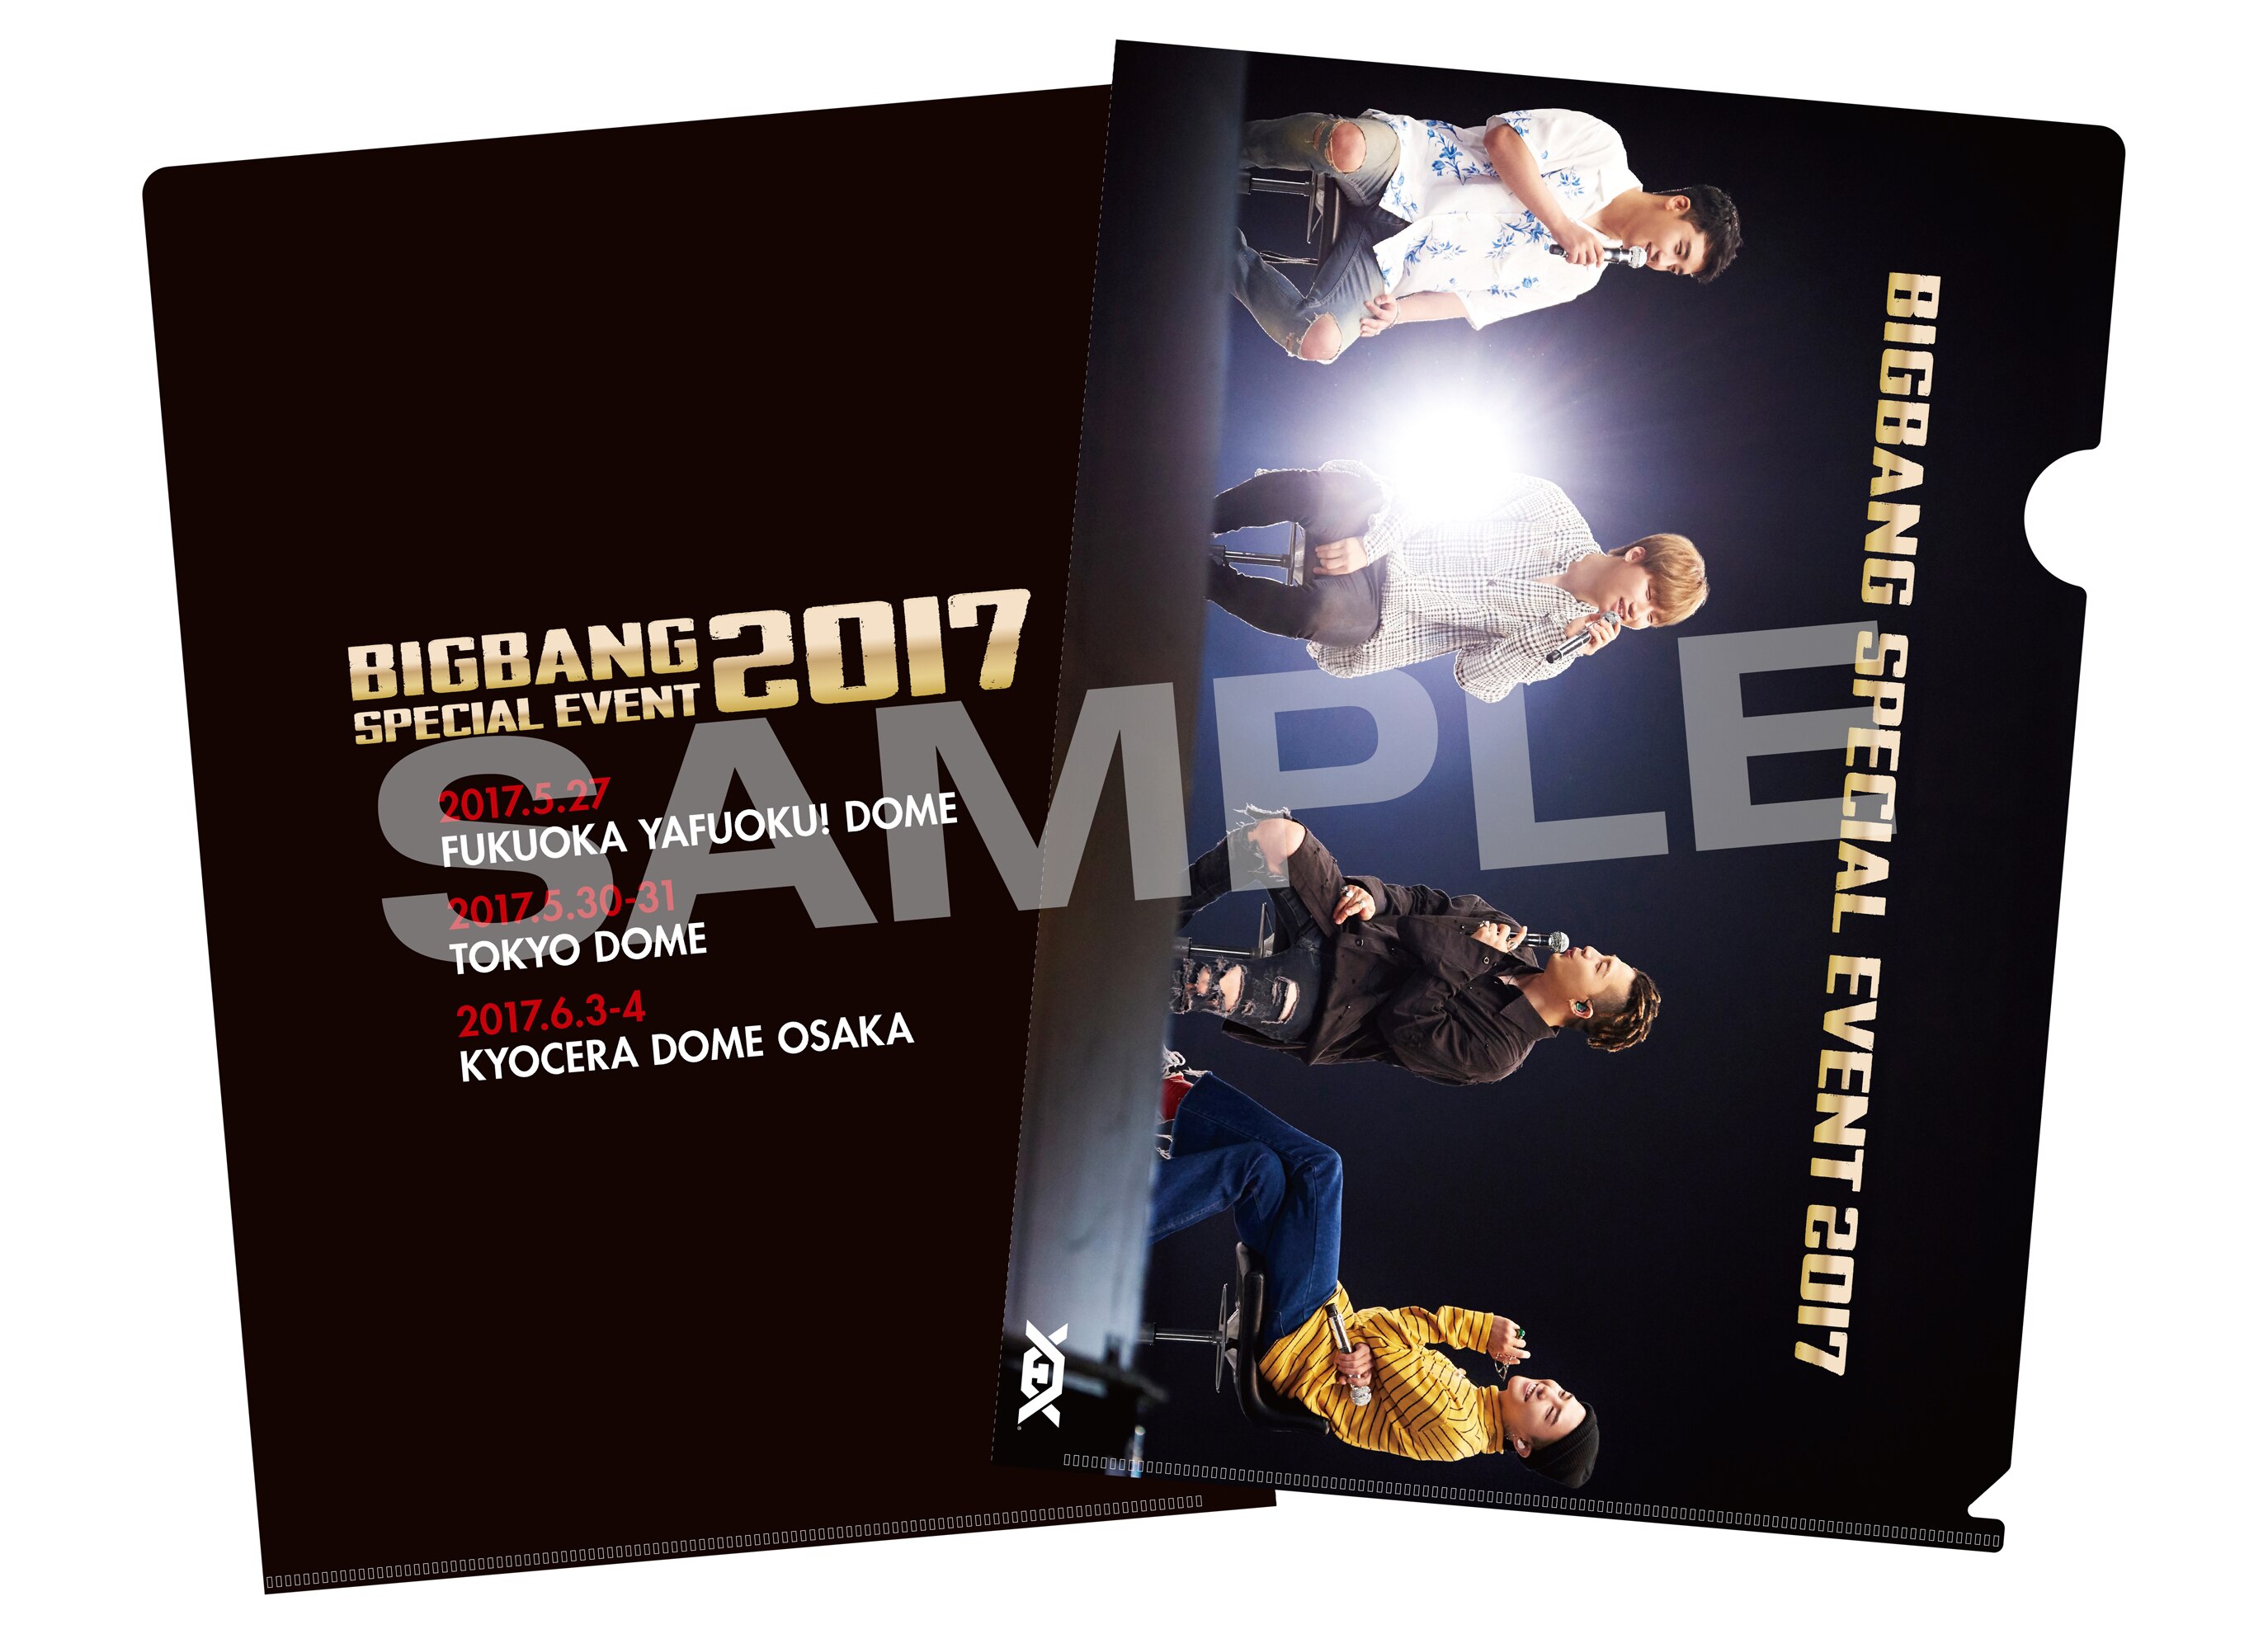 BIGBANG LIVE DVD  Blu-ray『BIGBANG SPECIAL EVENT 2017』